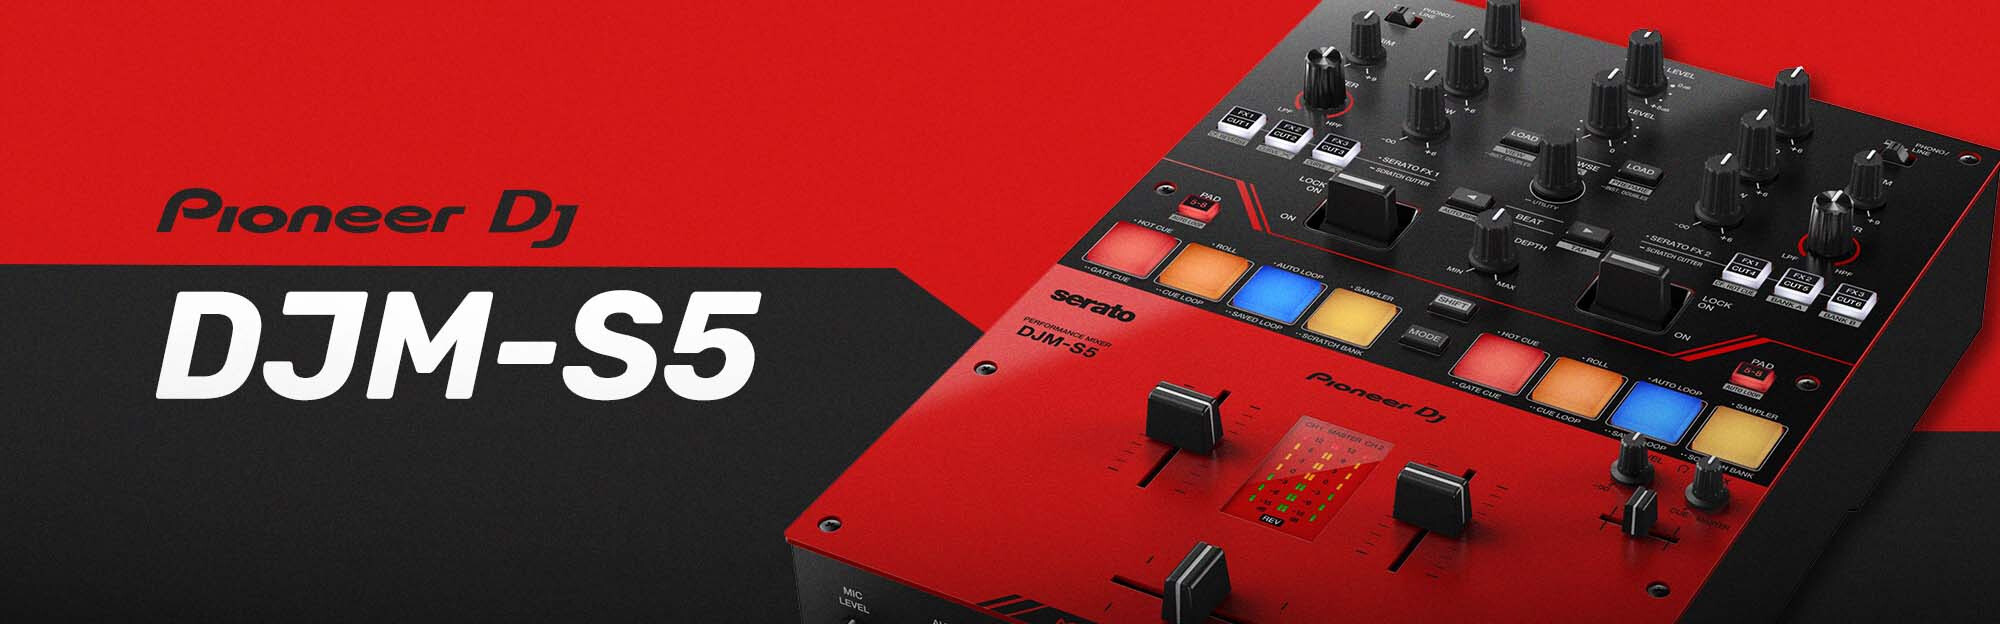 Pioneer DJ DJM-S5 Mixer Review